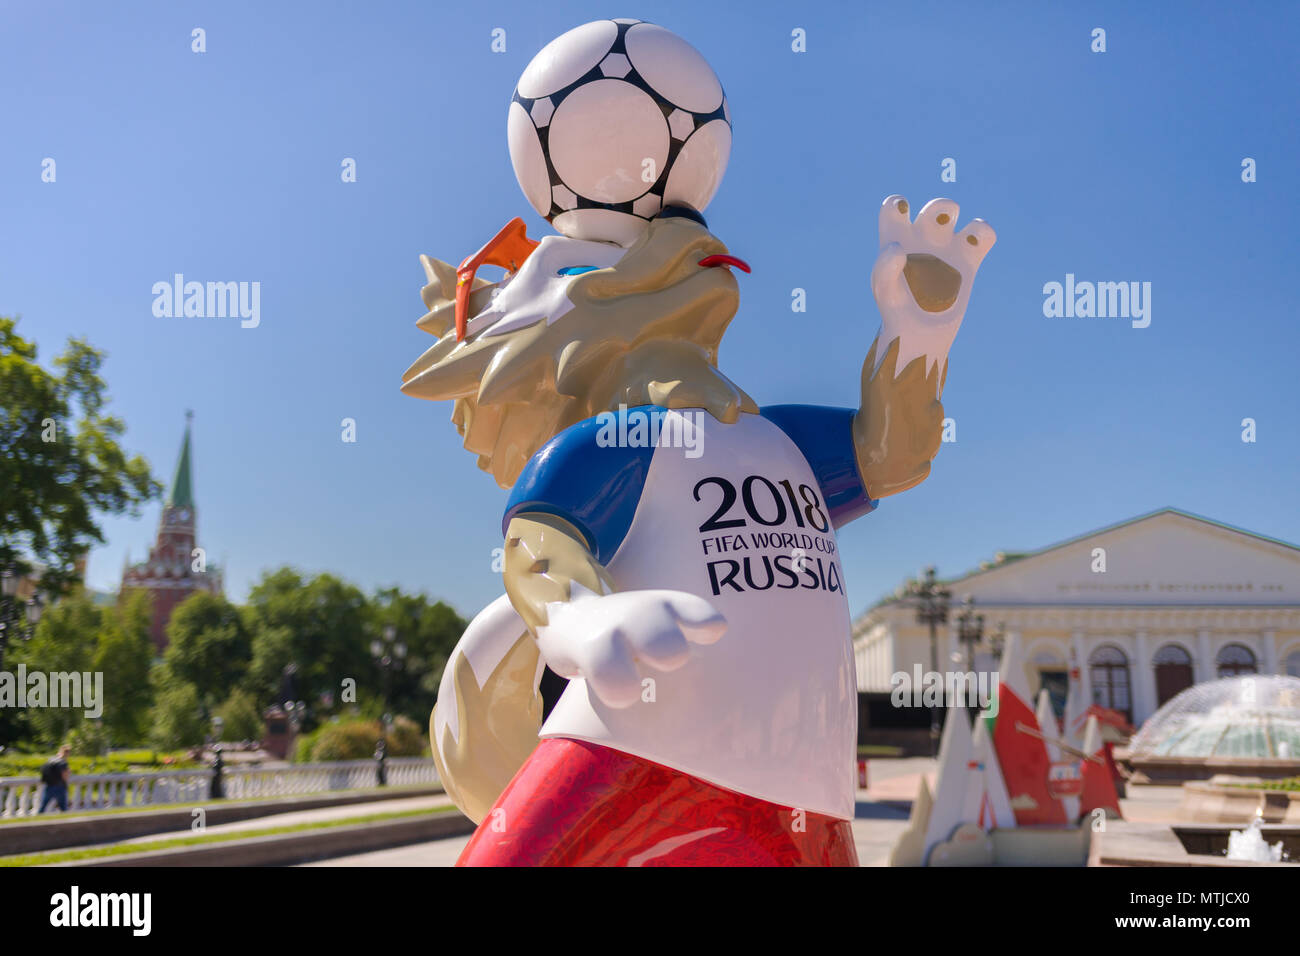 Mascotte officielle de la Coupe du Monde de la FIFA 2018 en Russie - Zabivaka et Kremlin de Moscou tour à fond. Symbole de foot Banque D'Images